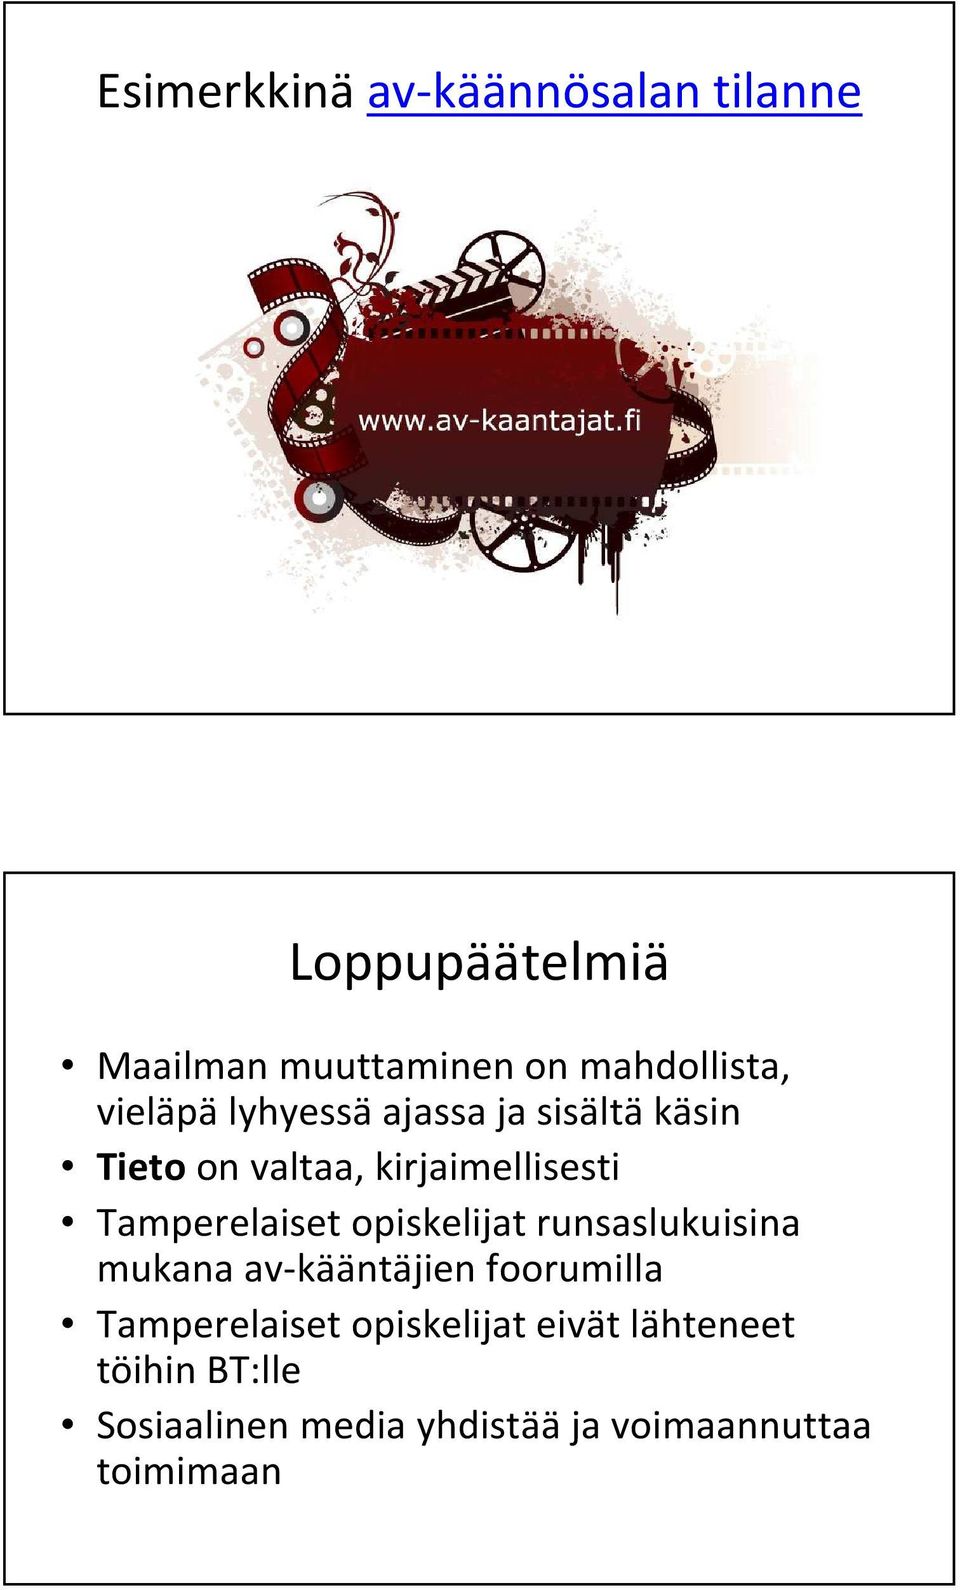 Tamperelaiset opiskelijat runsaslukuisina mukana av-kääntäjien foorumilla